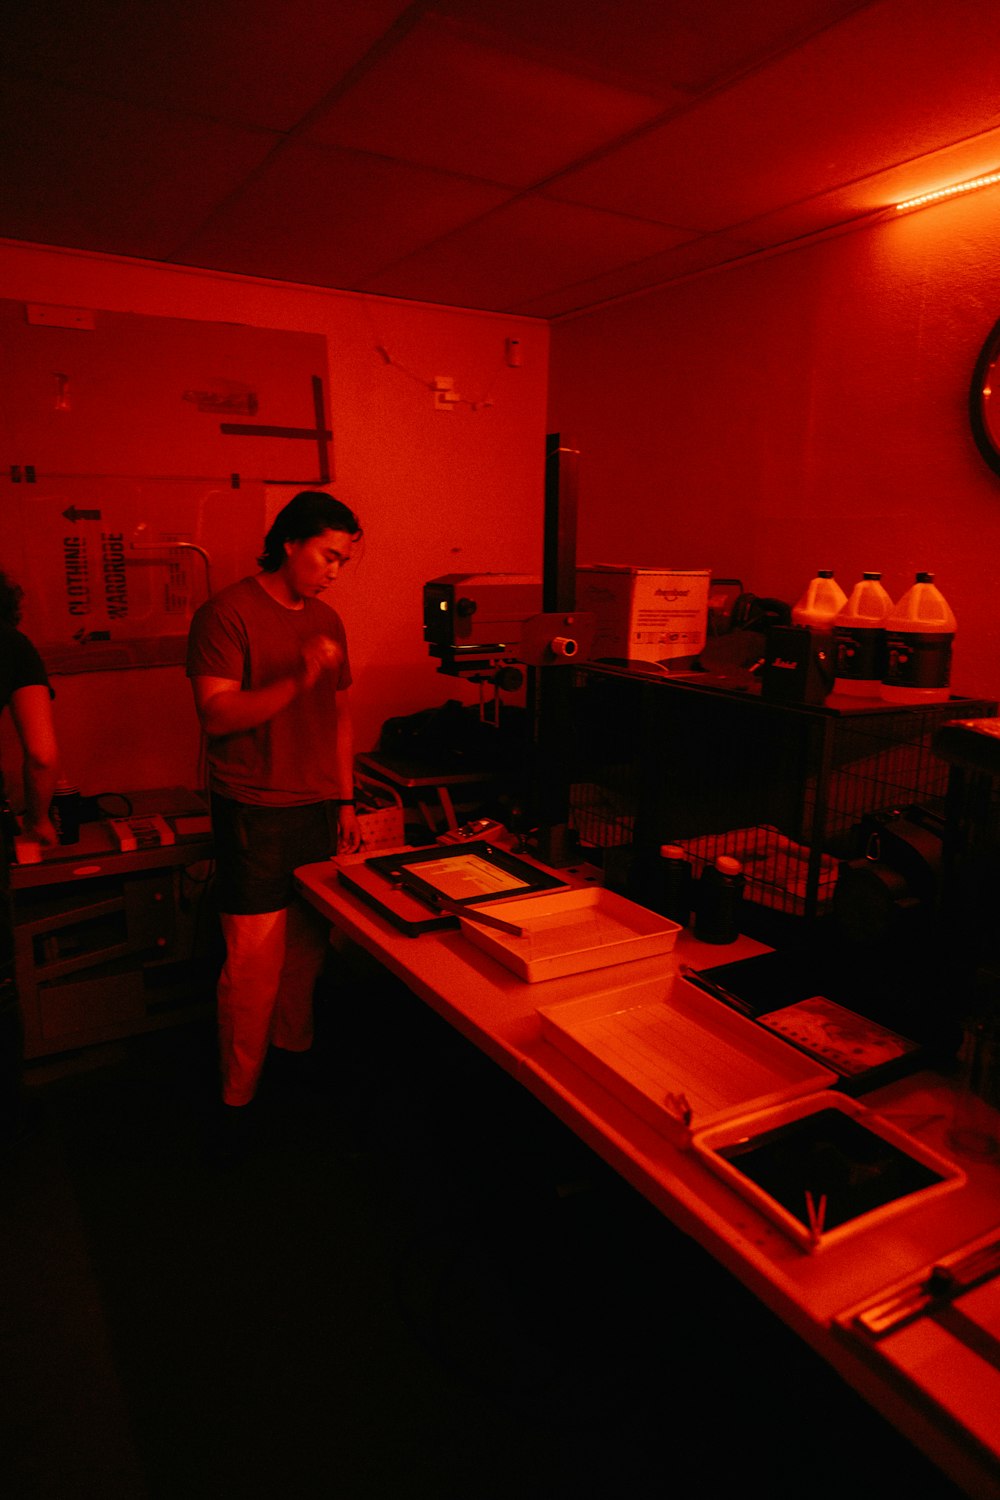 Ein Mann steht in einem Raum mit rotem Licht